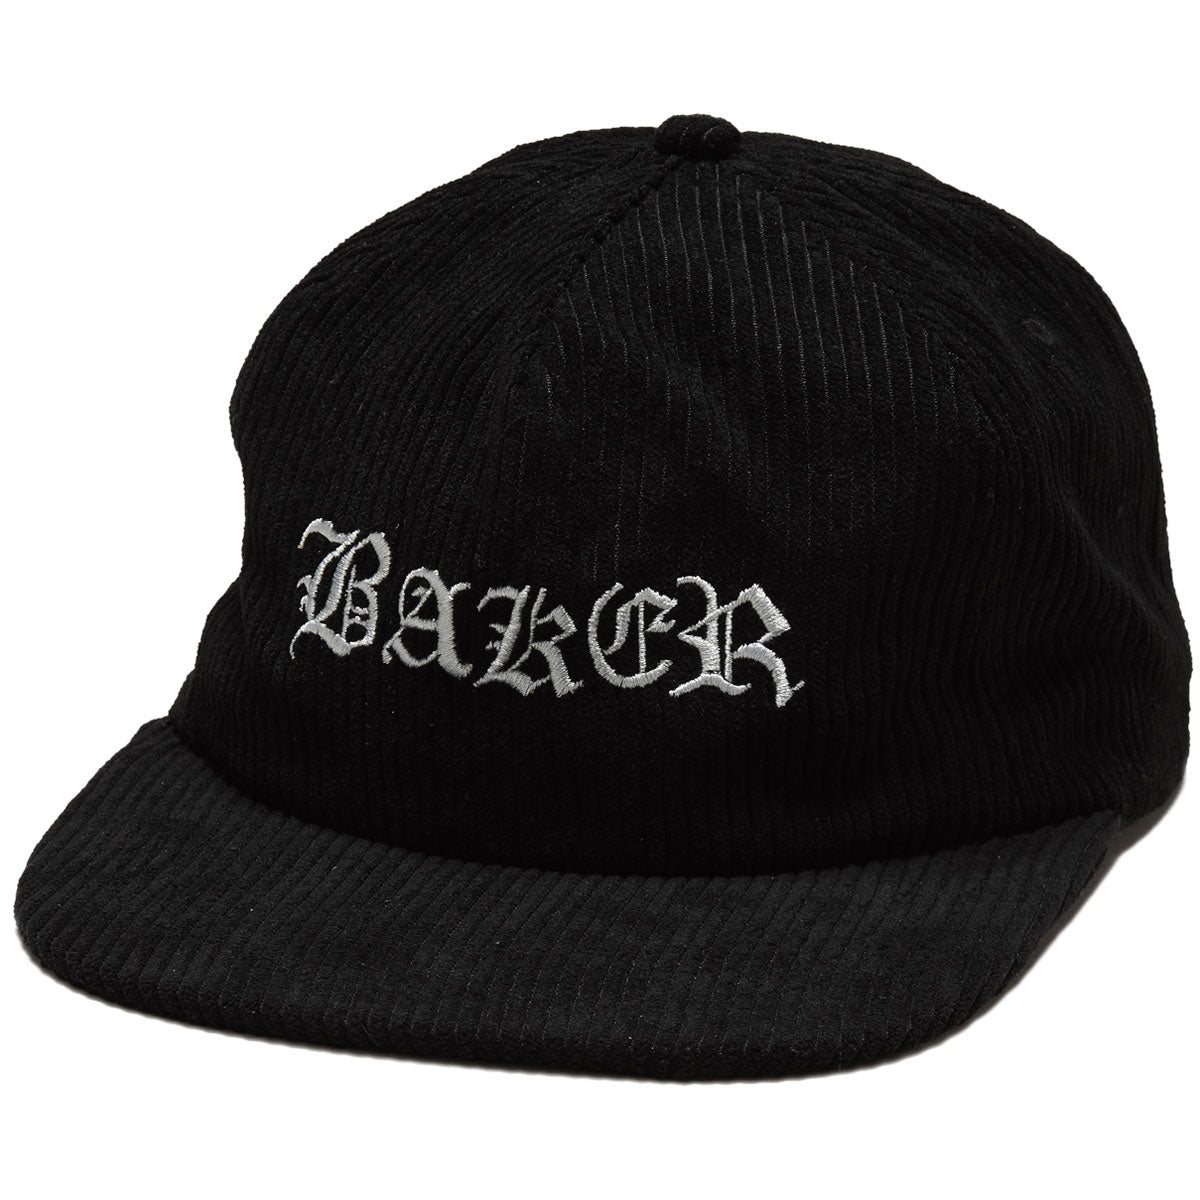 Baker Olde Cord Snapback Hat - Black/Grey image 1